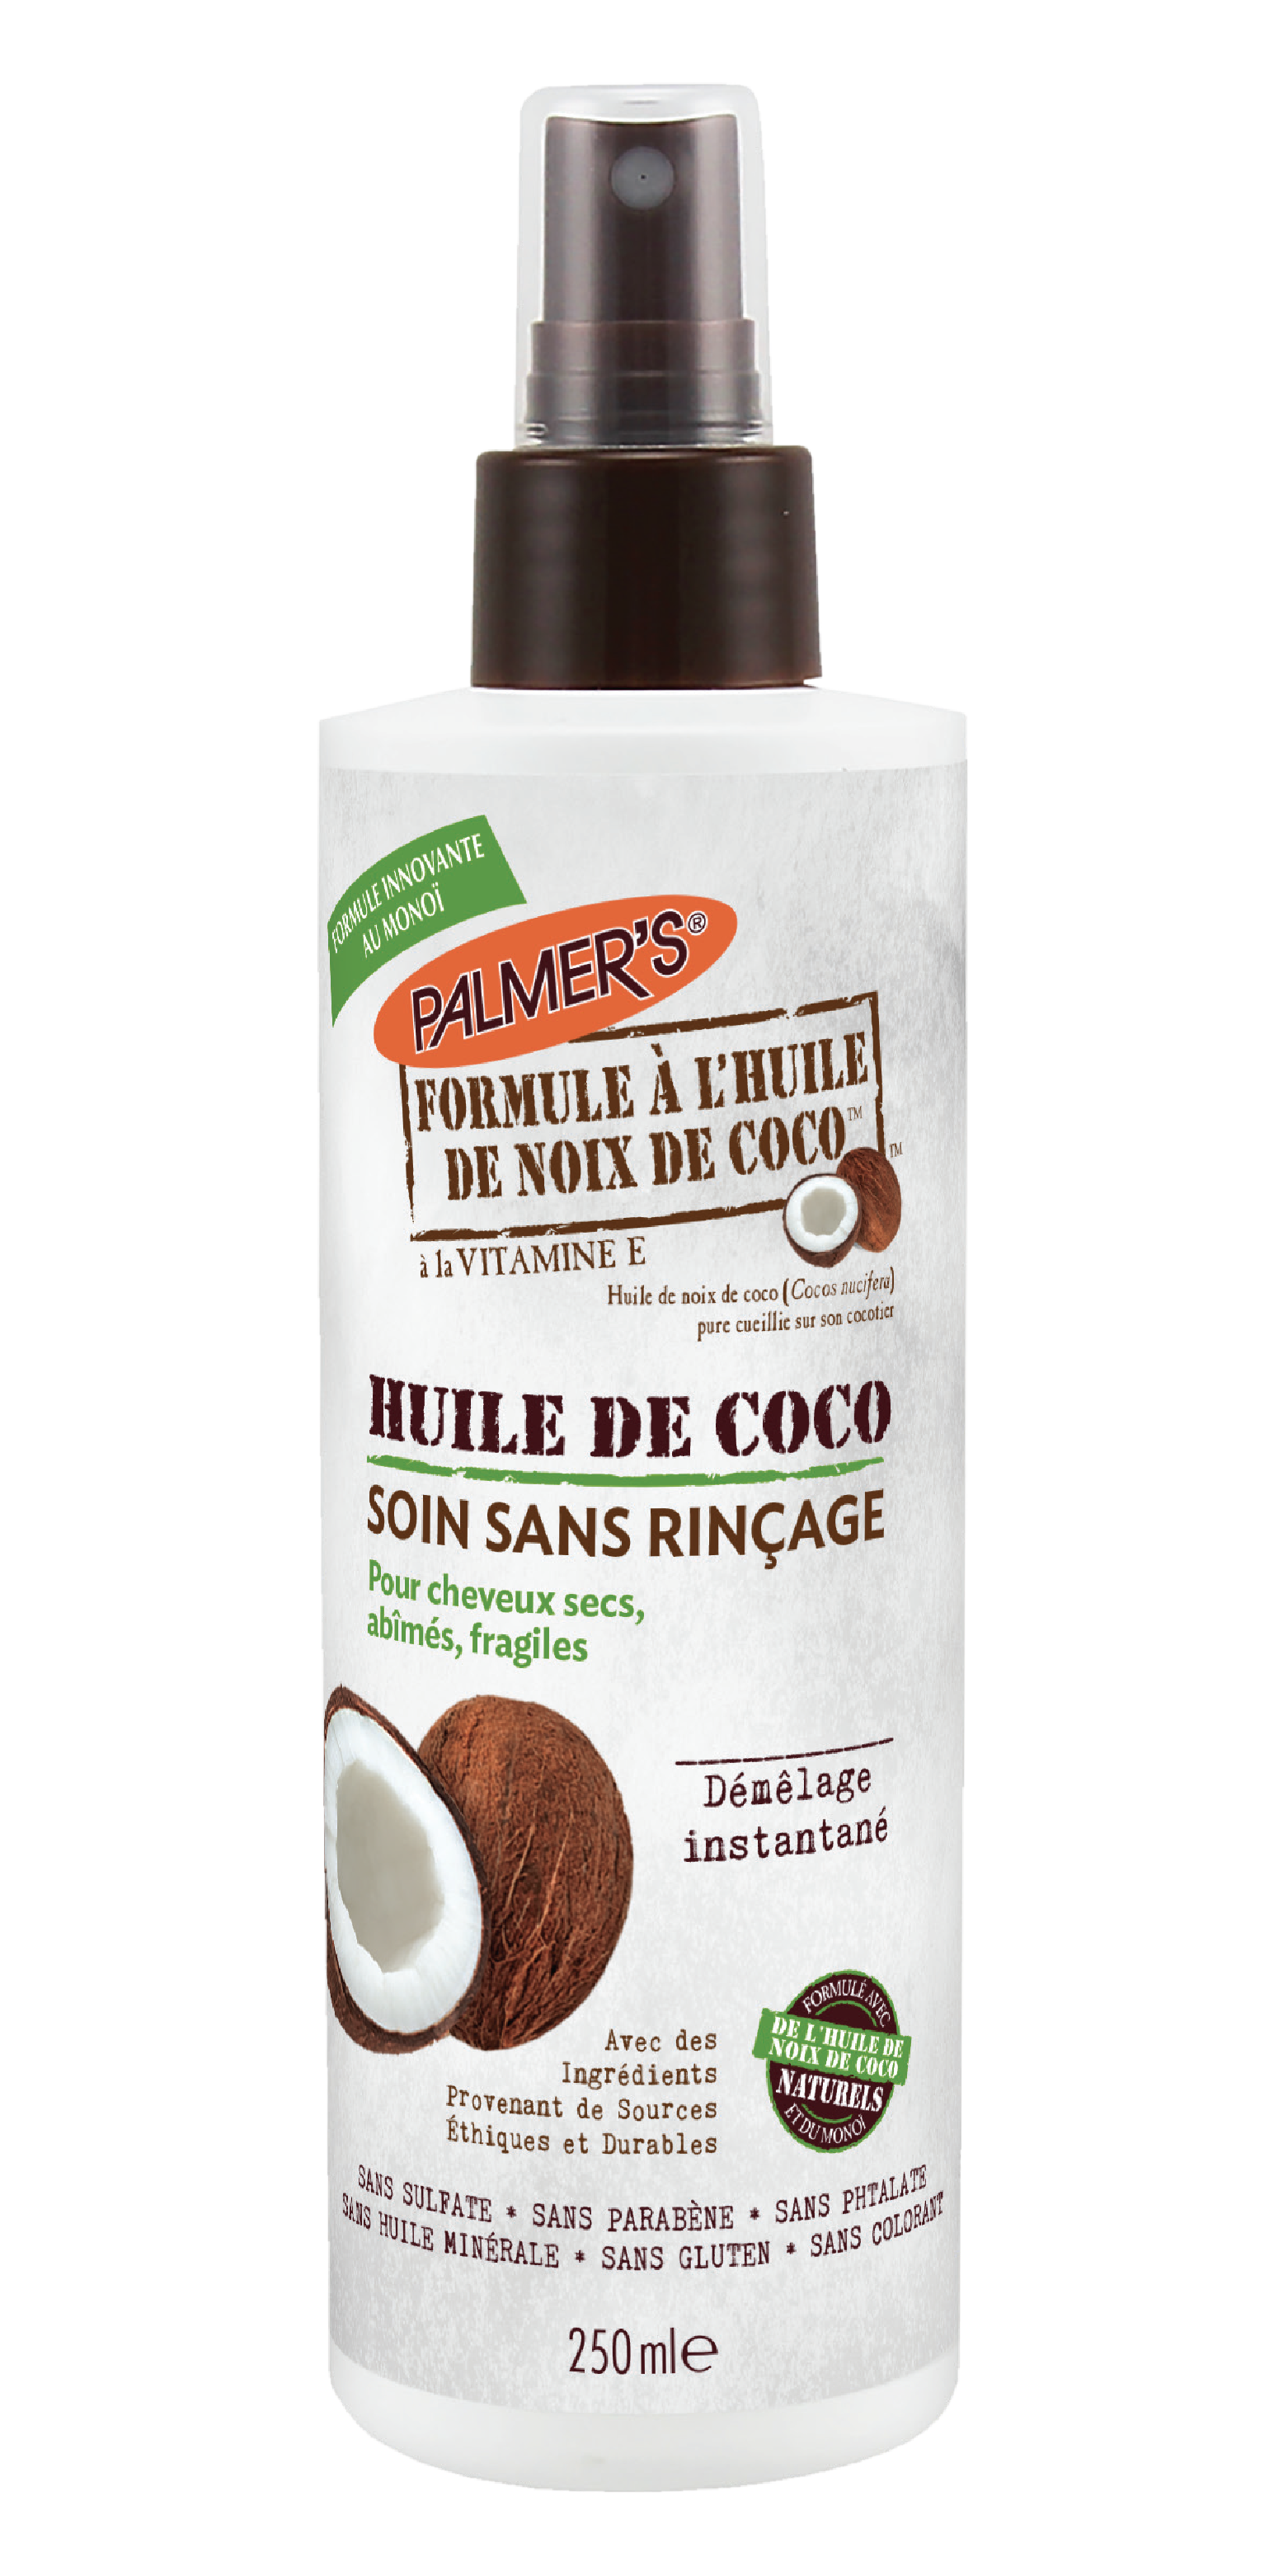 L'huile de coco rend t'elle vos cheveux plus et cassants ?